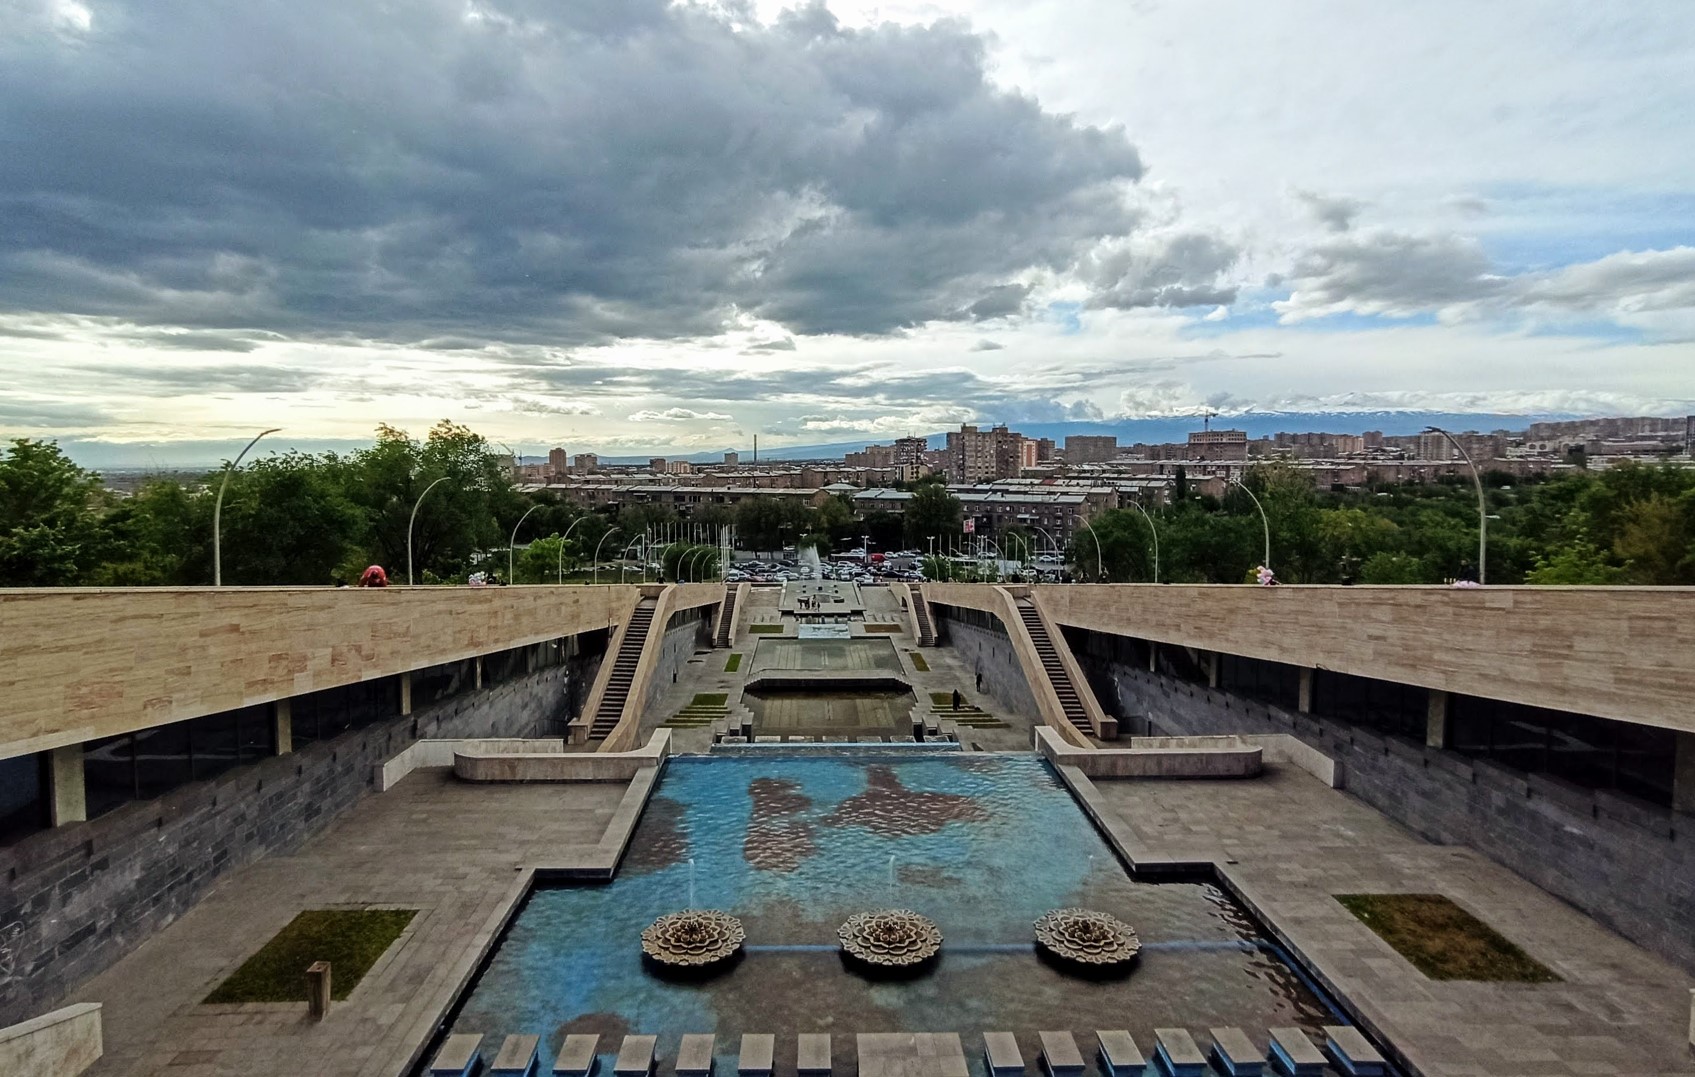 Yerevan panorama. Photo by PixMeta.com